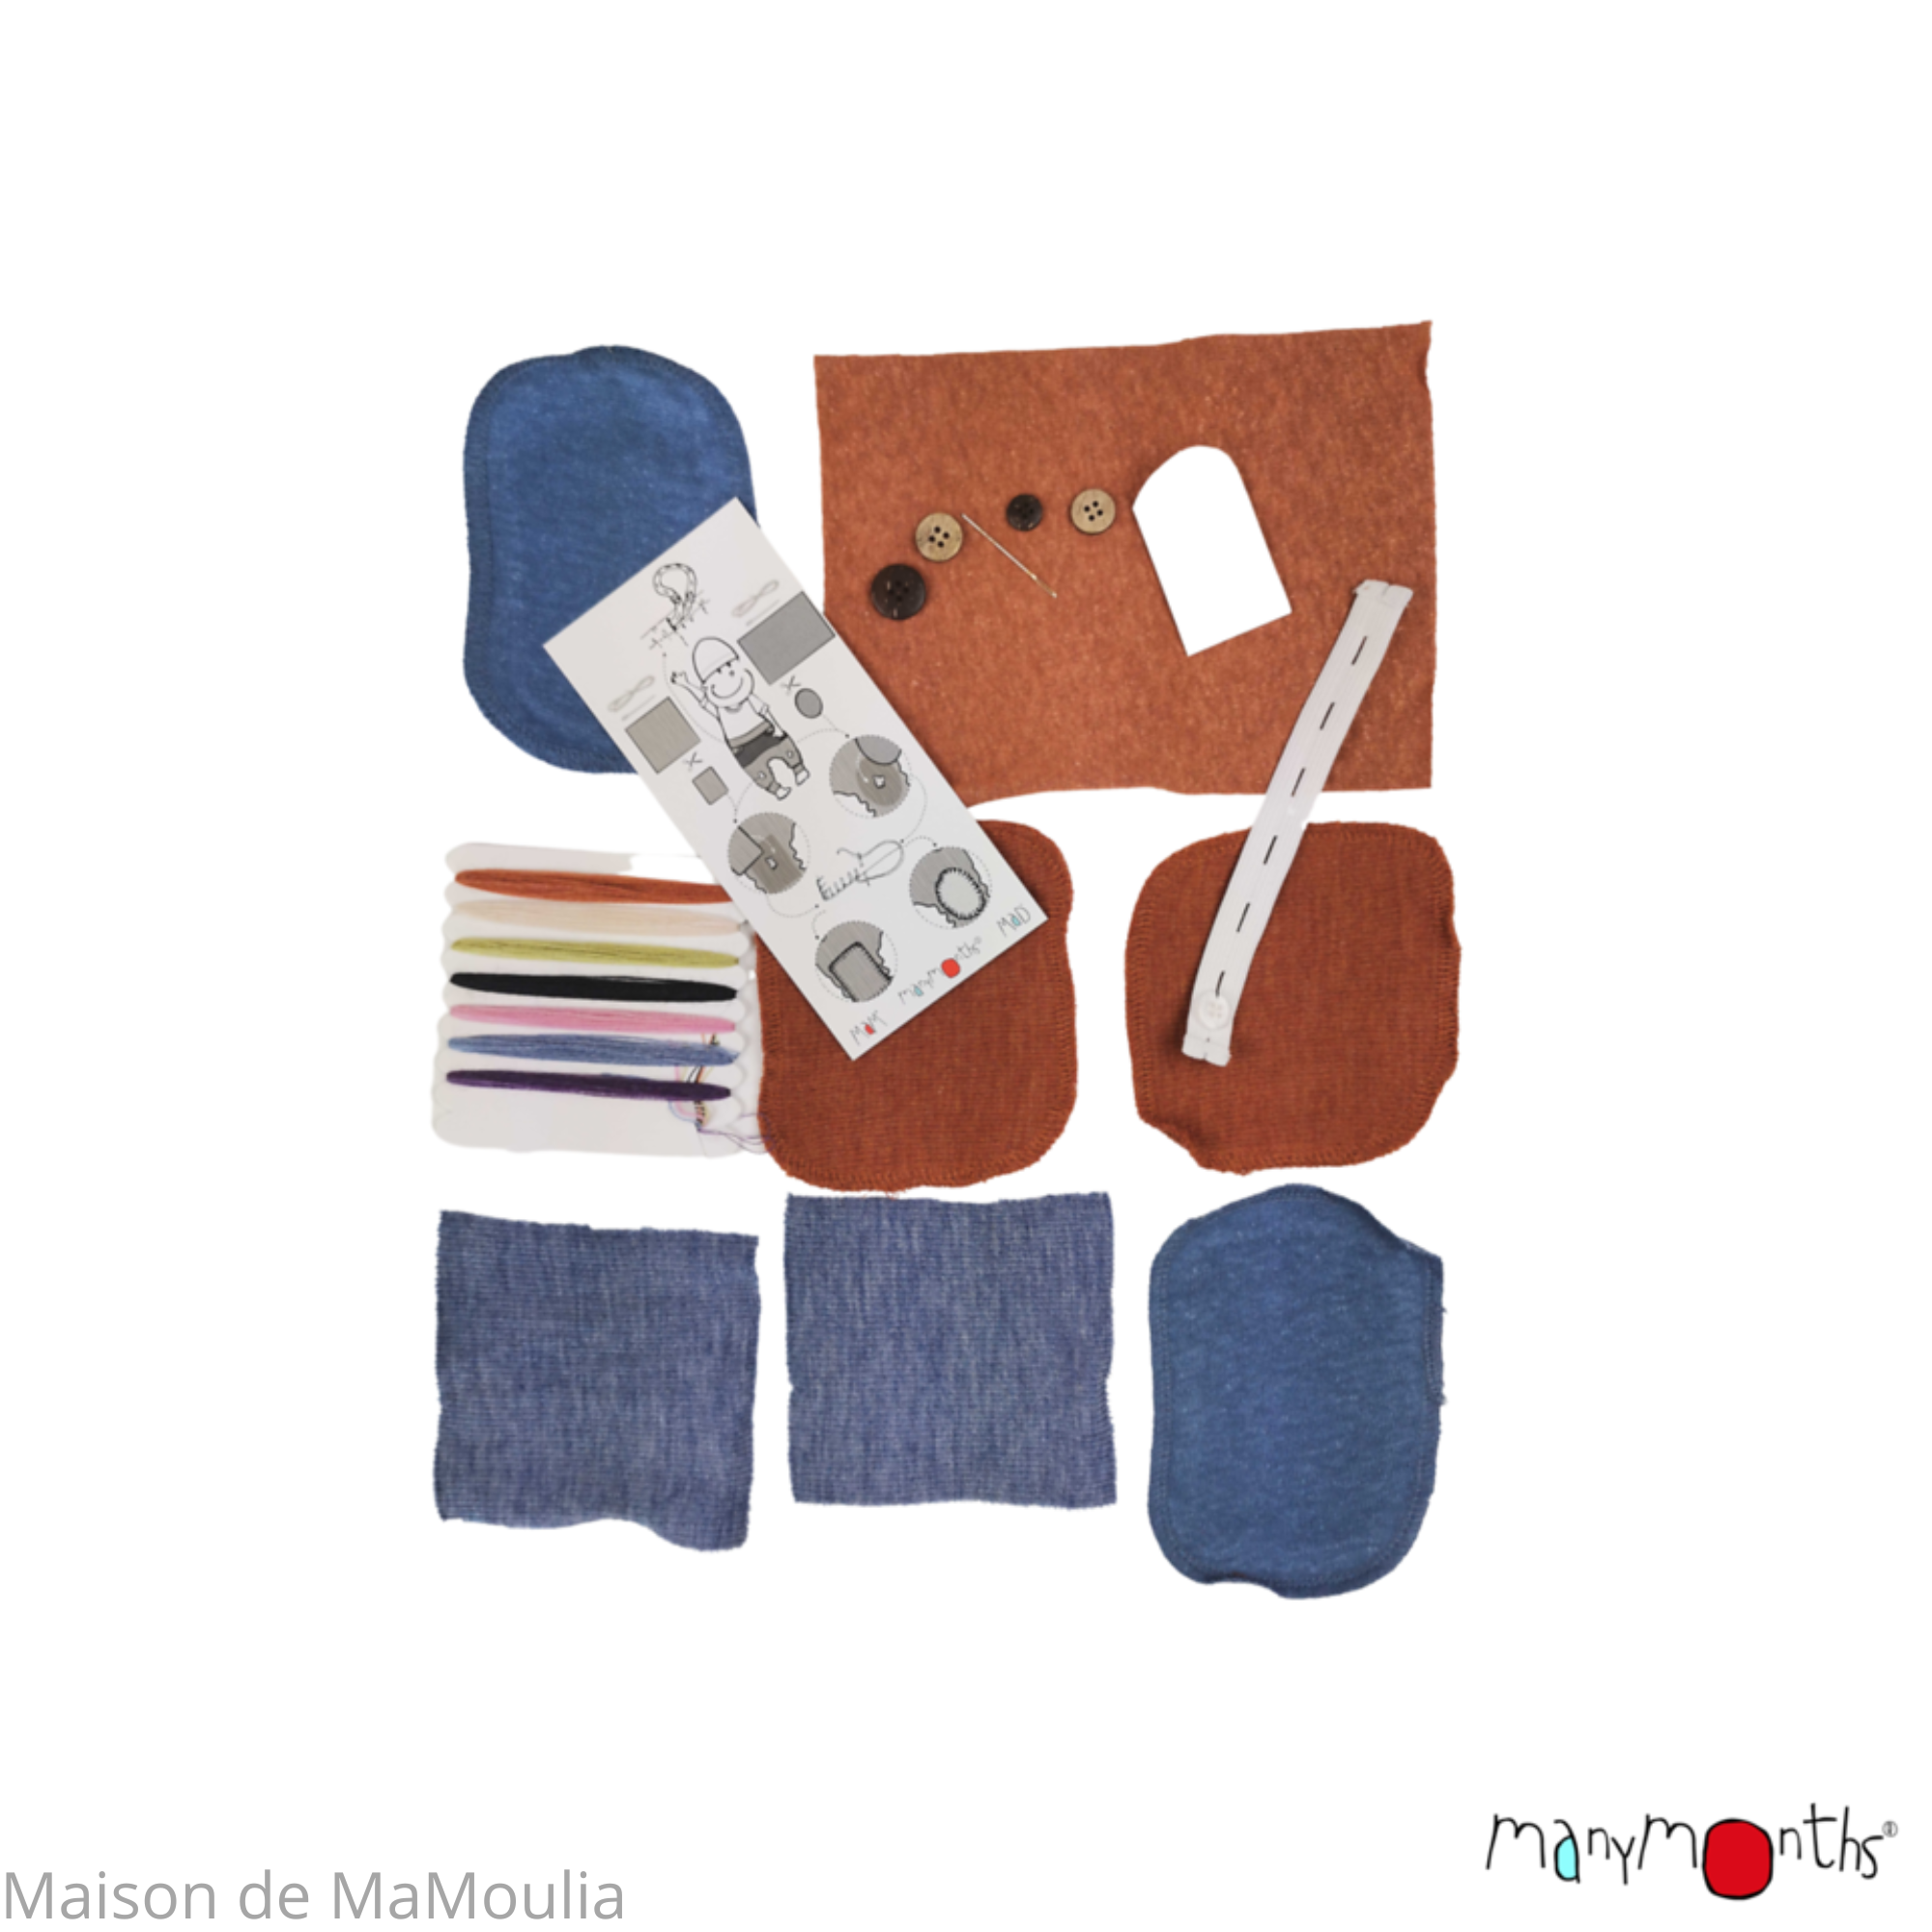 manymonths-kit-reparation-laine-merinos-maison-de-mamoulia-bleu-potters